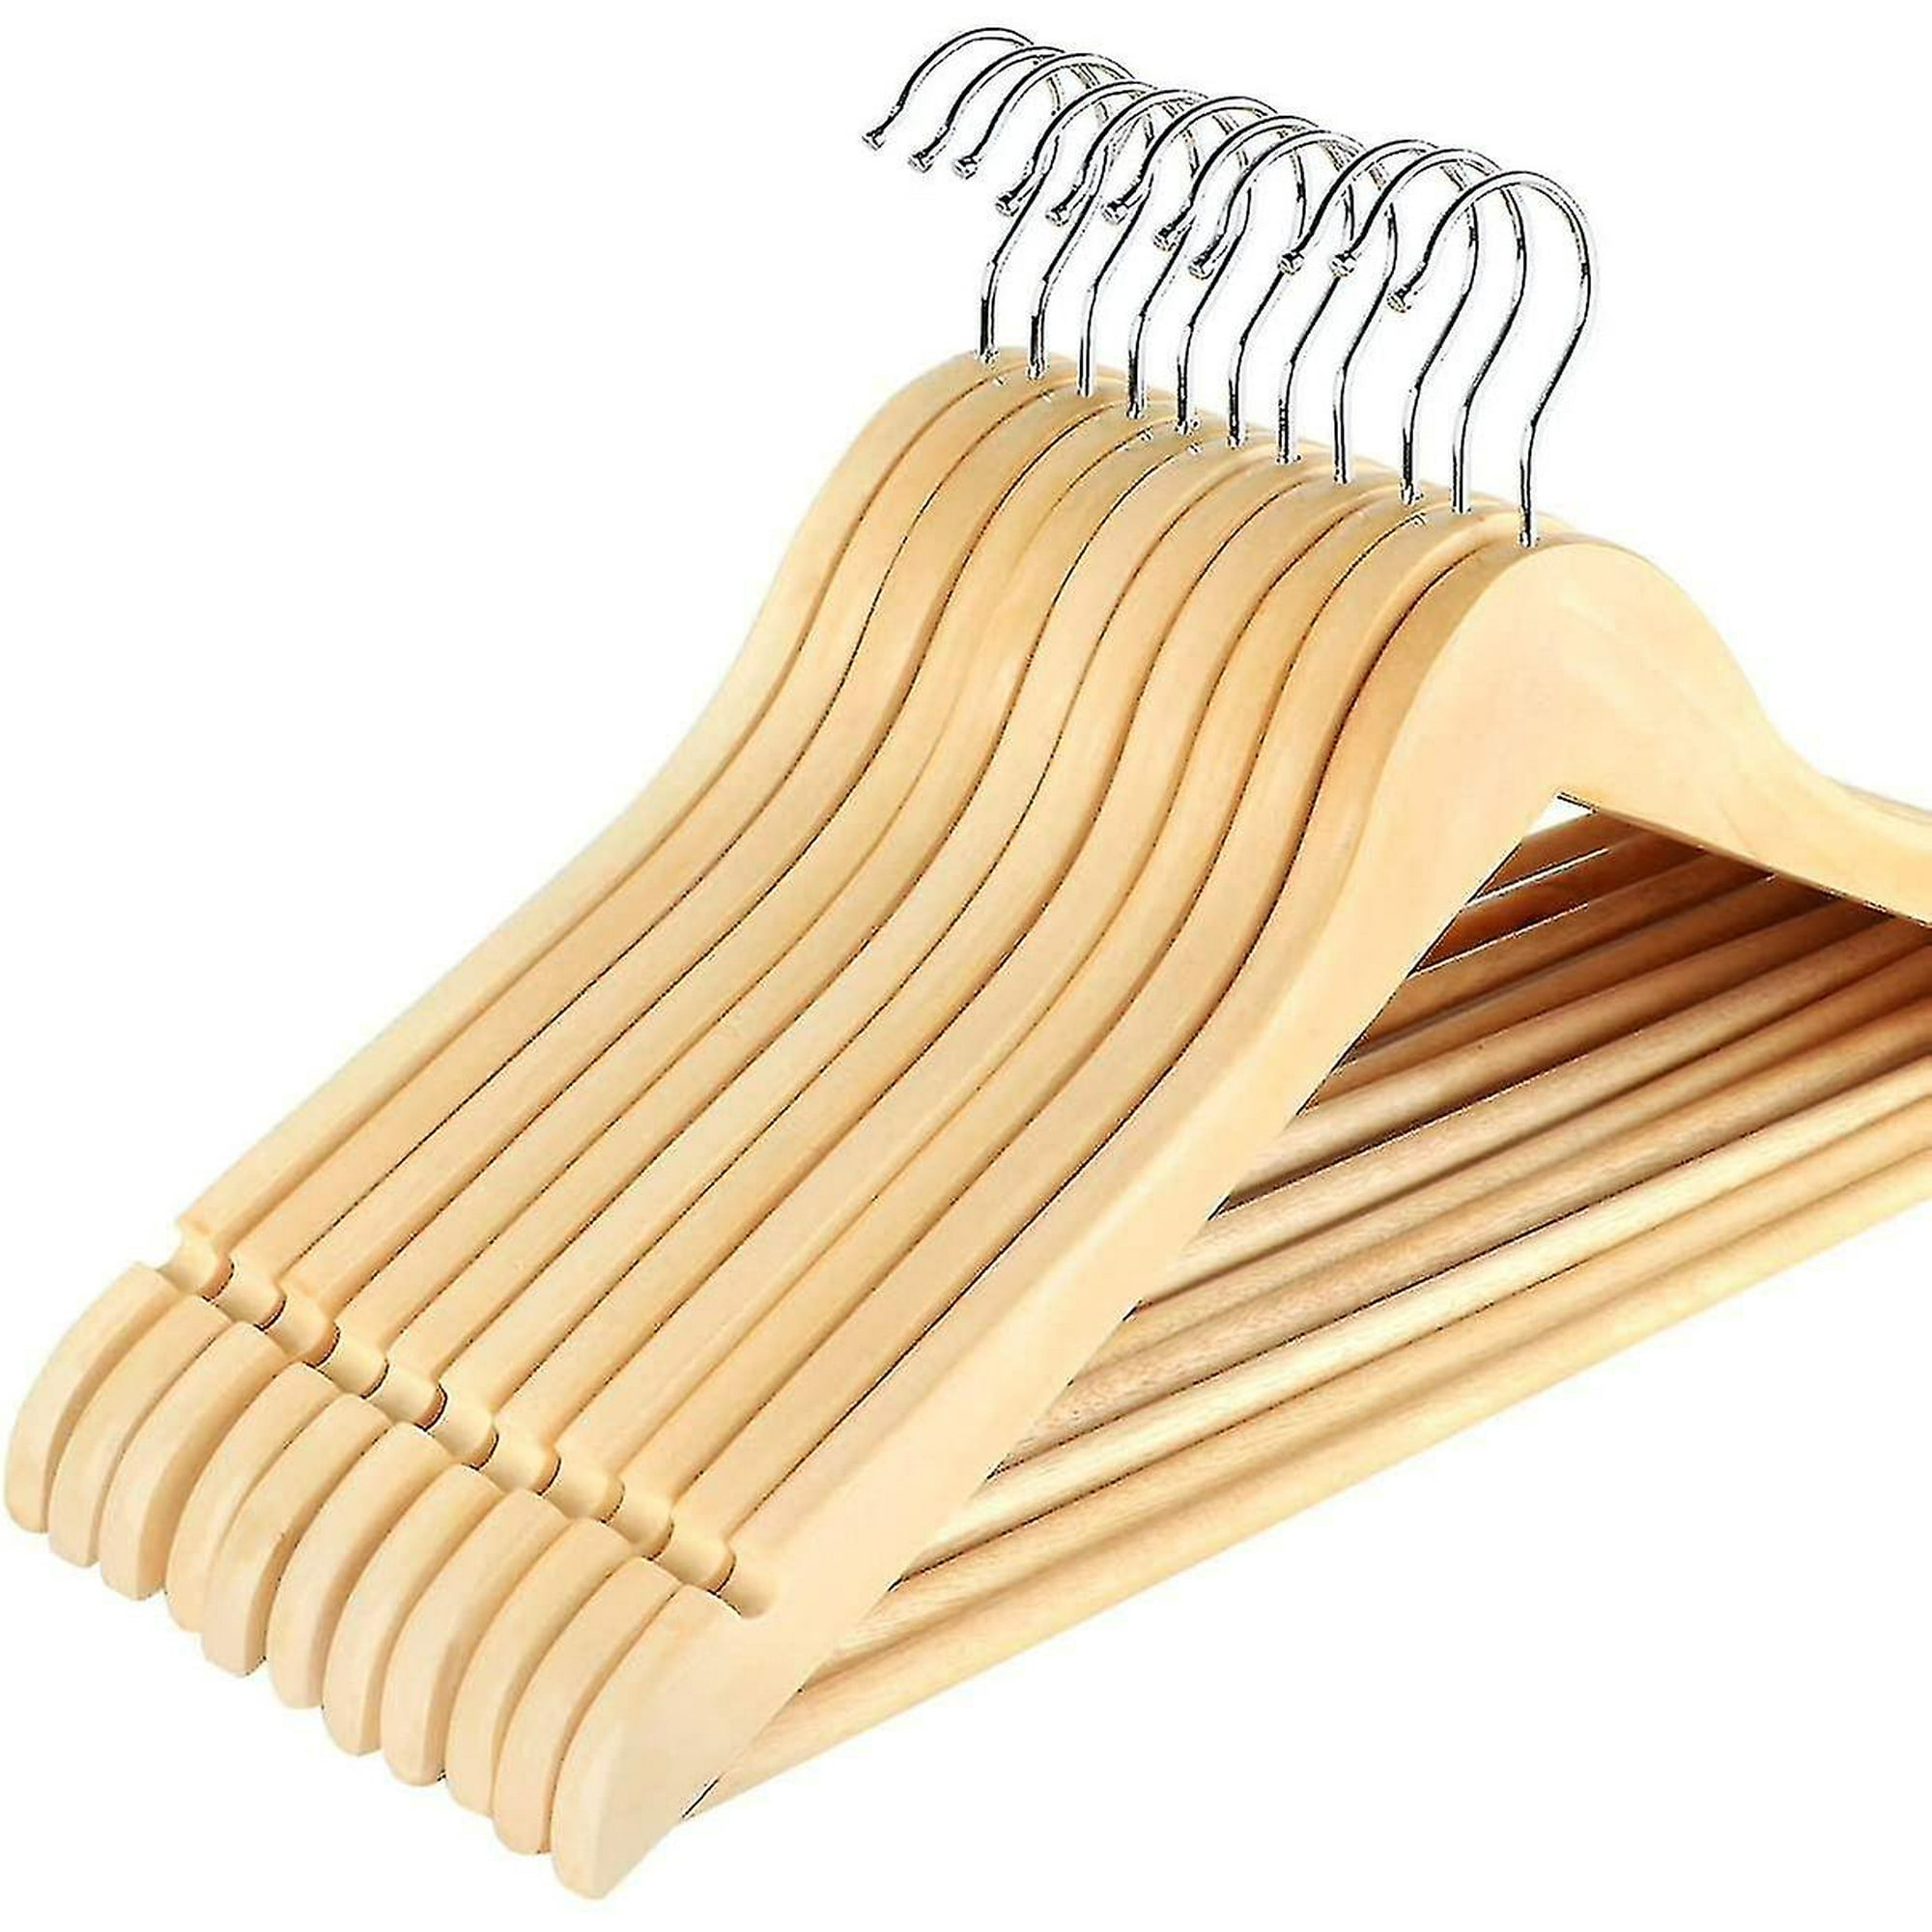 Perchas de madera de alta calidad, gancho de hombro ancho que no deja  marcas, fuerte y duradero, fuerte capacidad de carga perchas para ropa